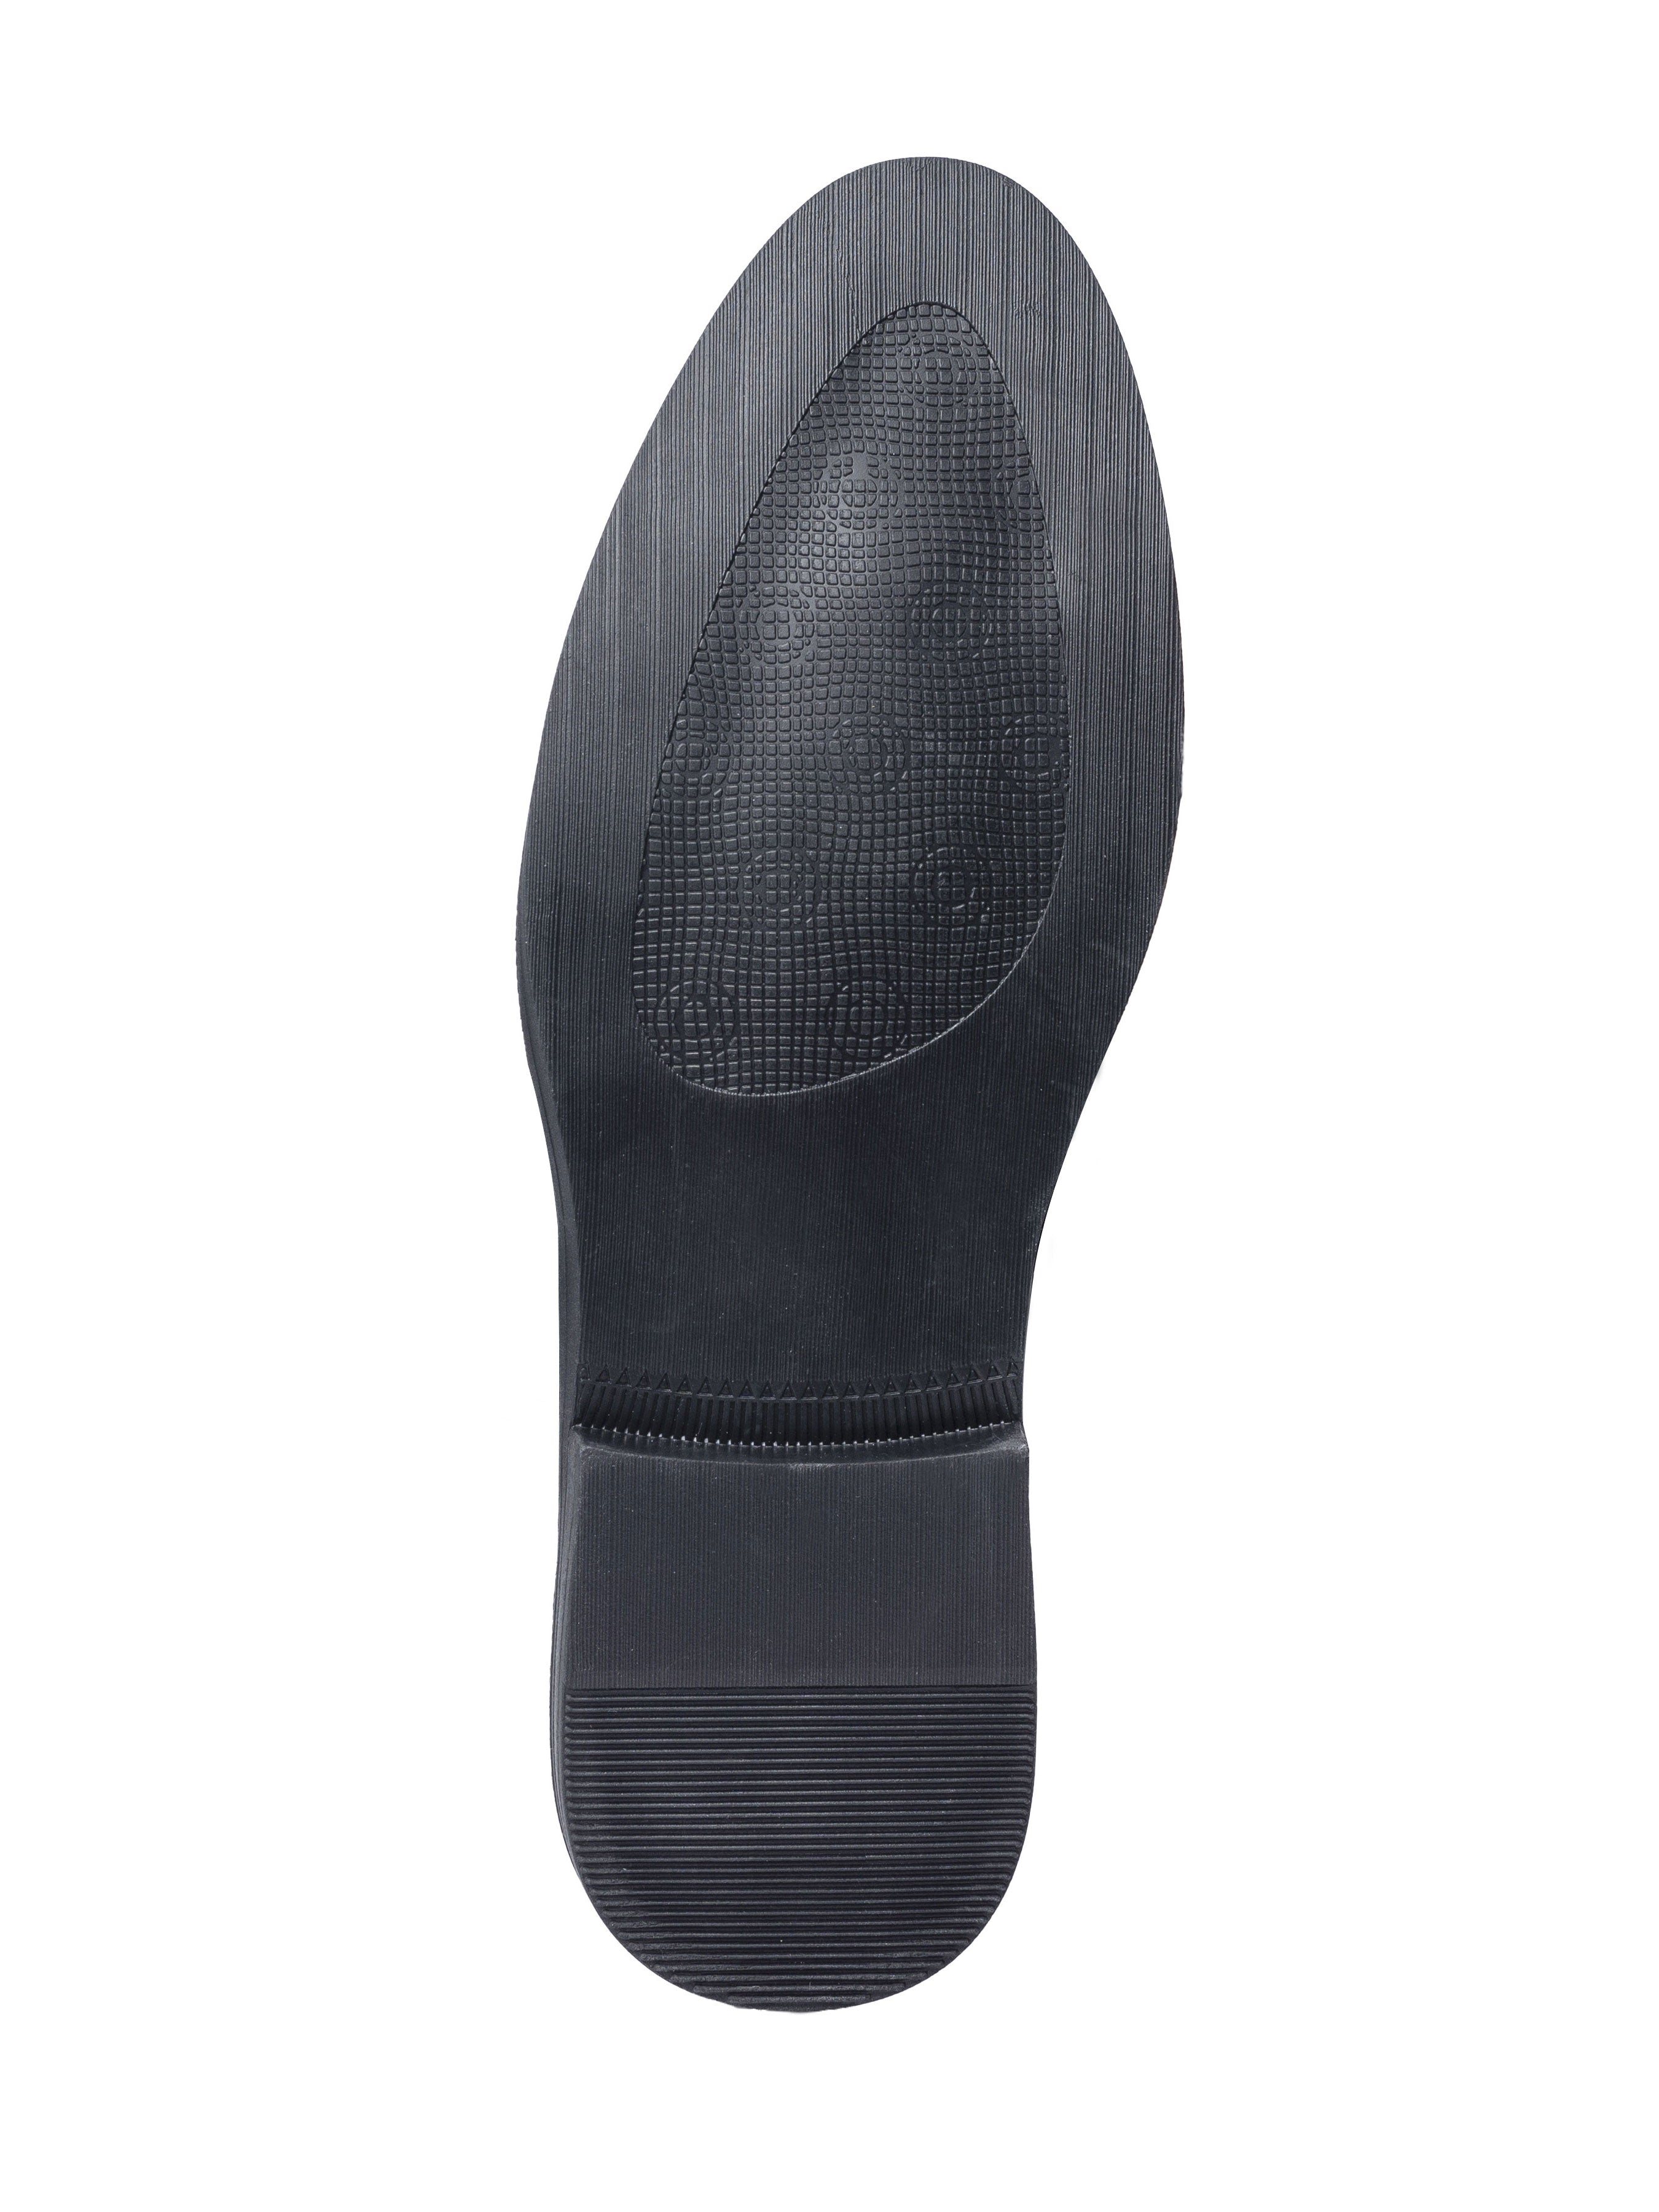 Horsebit Buckle Loafer - Black Pebble Grain Leather (Flexi-Sole) - Zeve Shoes